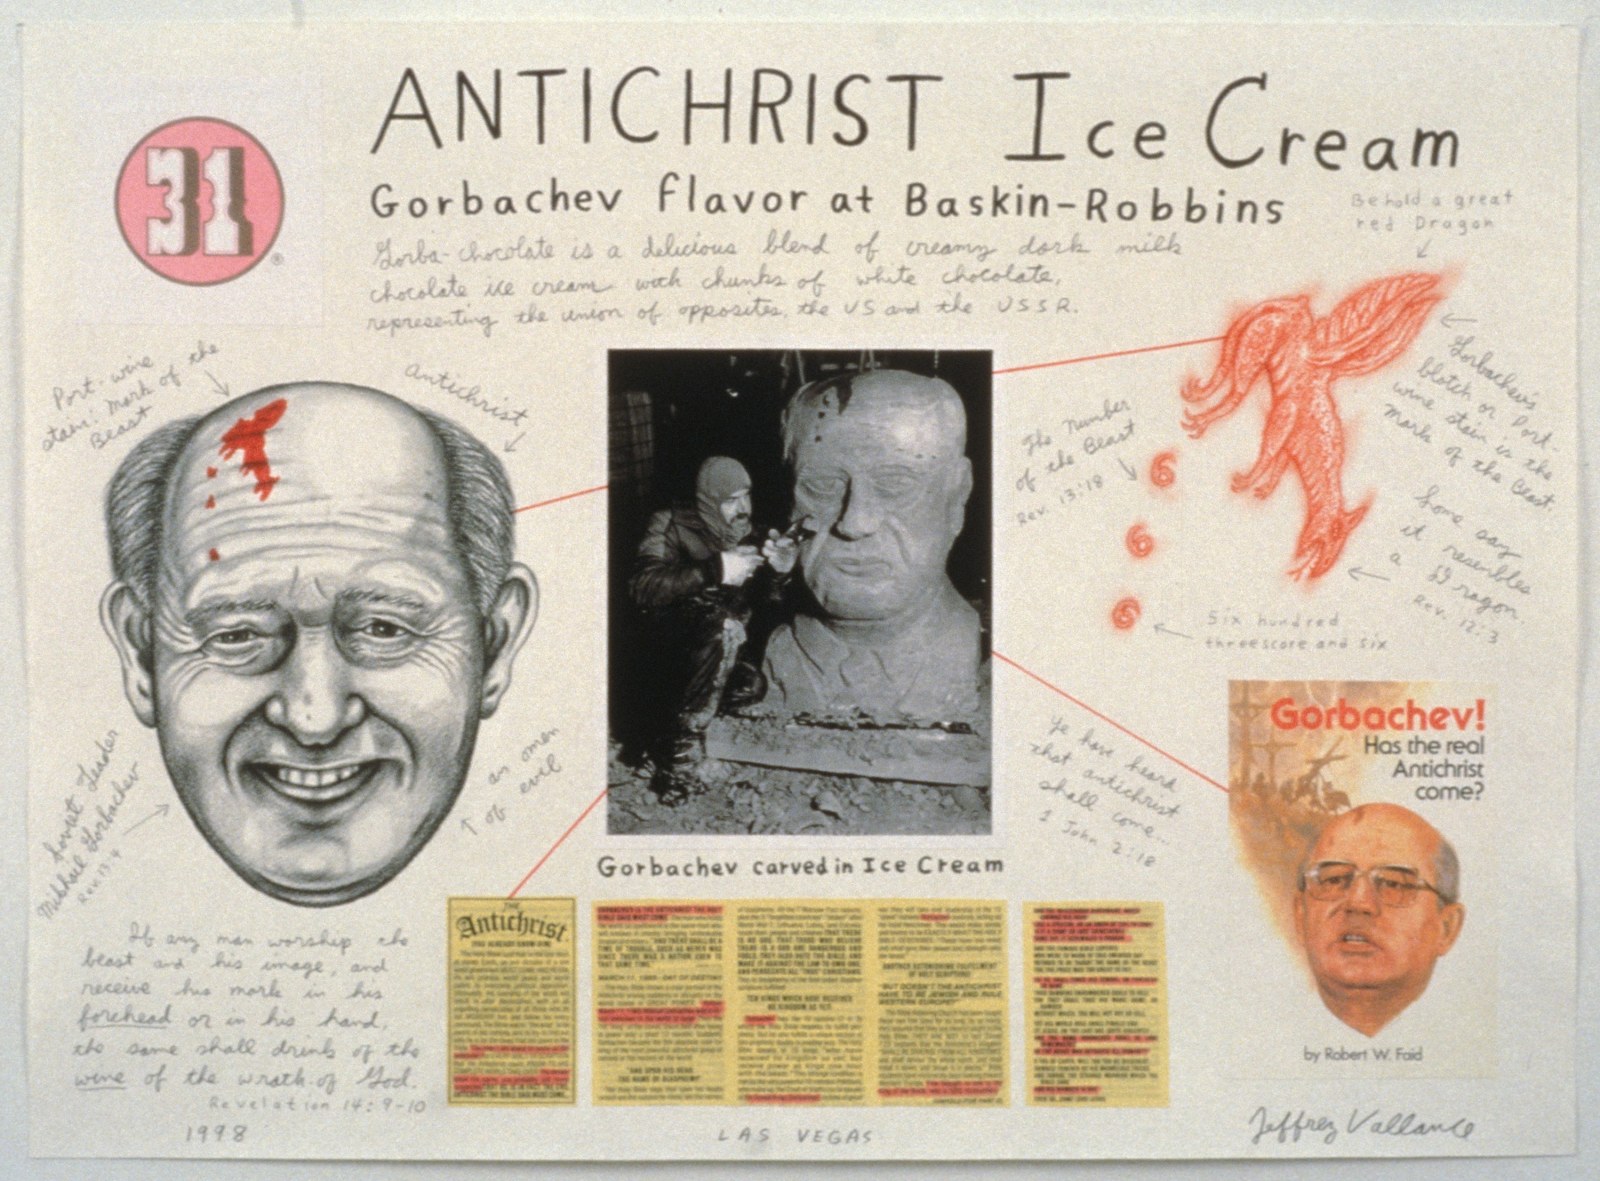 JEFFREY VALLANCE, Antichrist Ice Cream